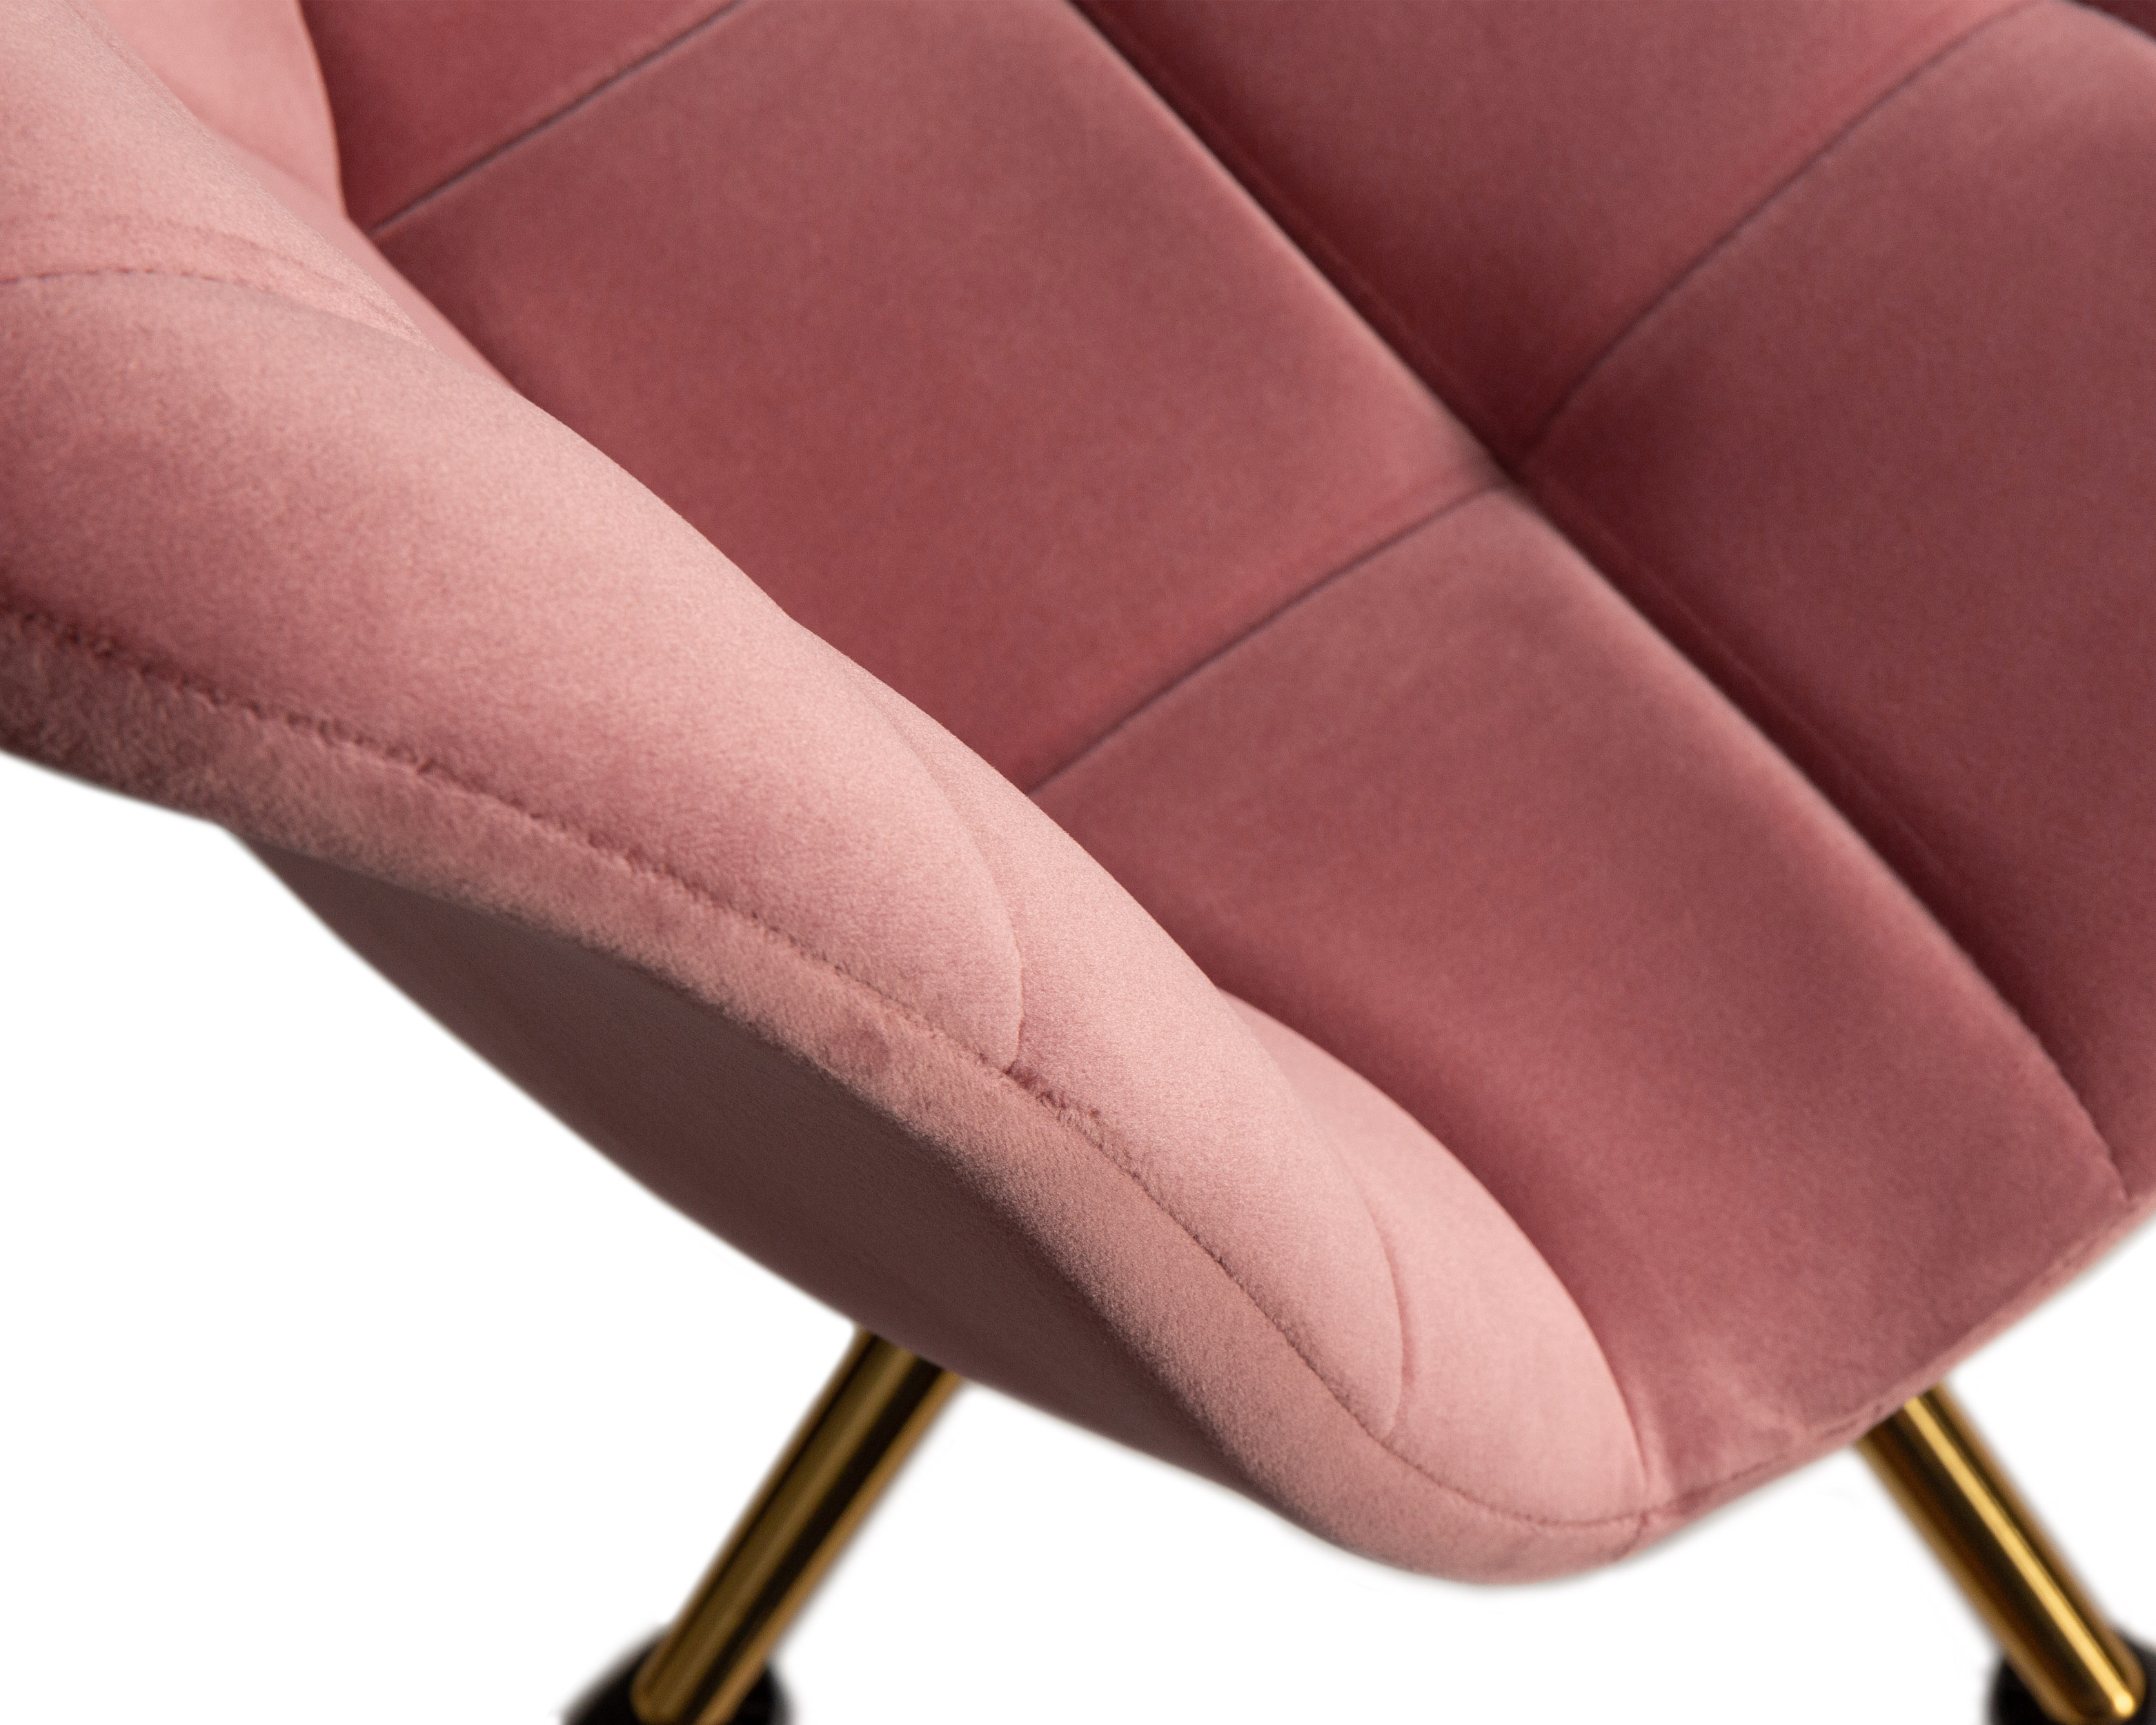 Офисное кресло для персонала DOBRIN MONTY GOLD розовый велюр MJ9-32